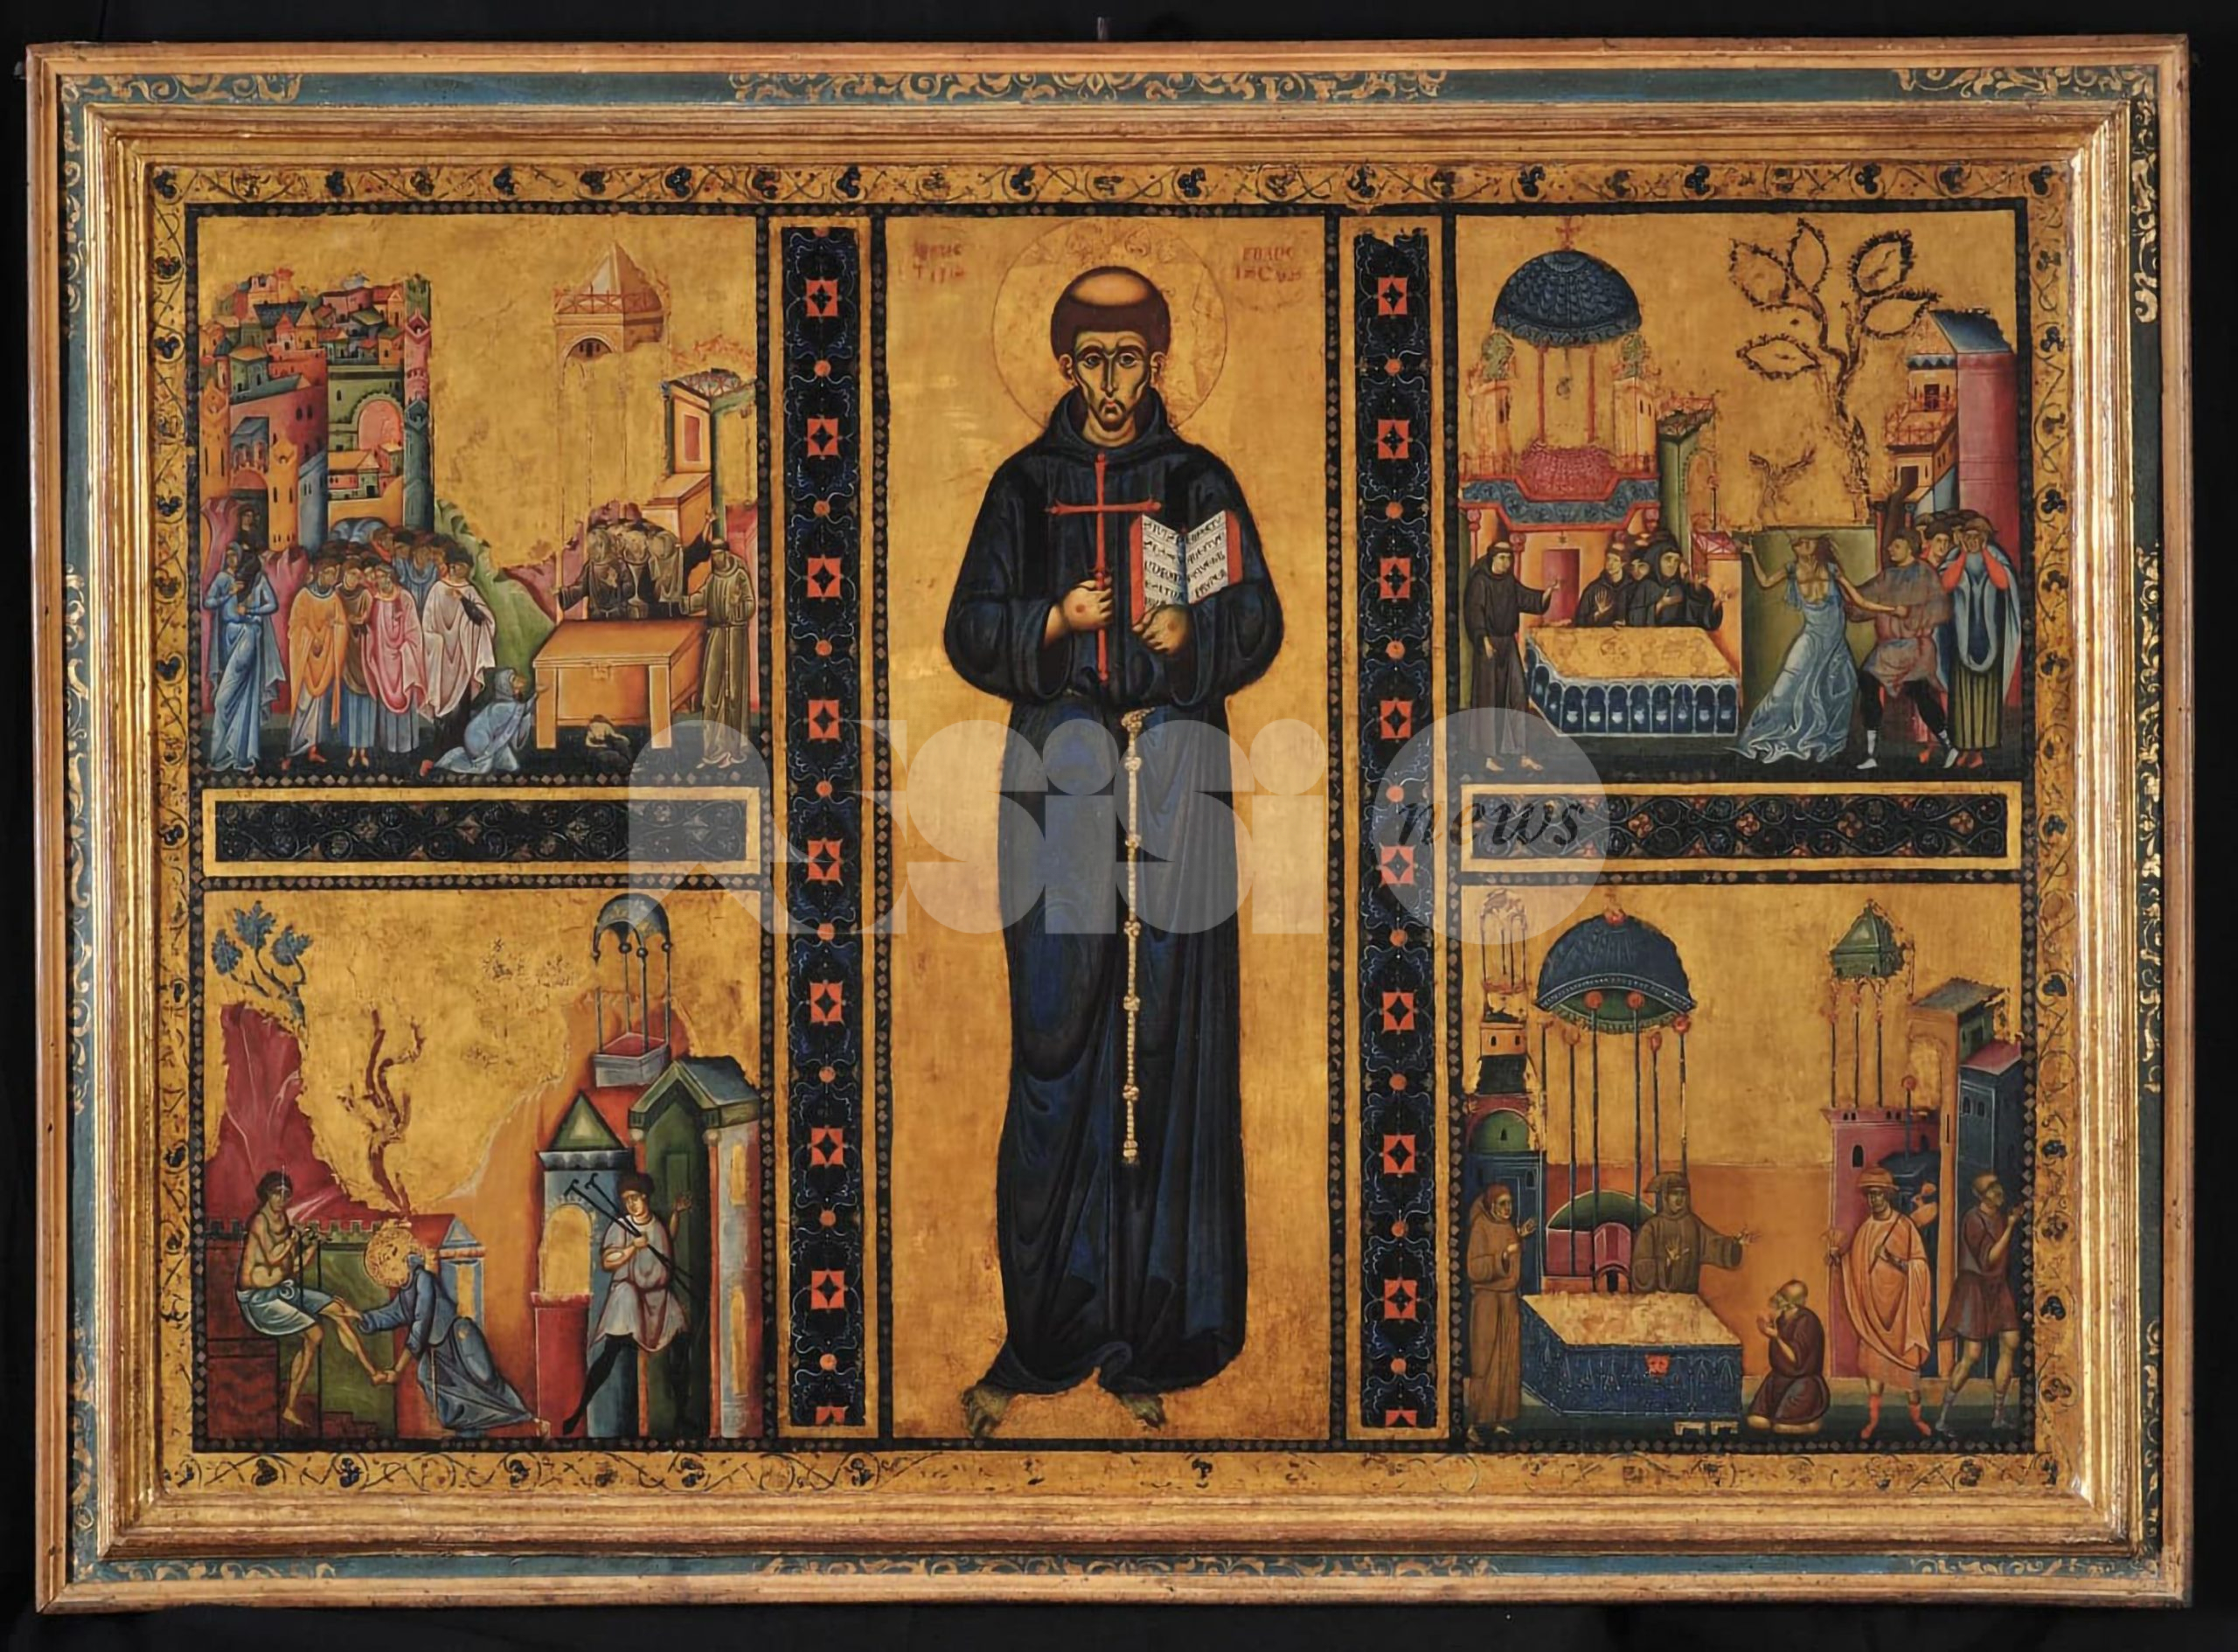 Saint Francis of Assisi, dal Sacro Convento tre tesori per la National Gallery: il 6 maggio apre la mostra